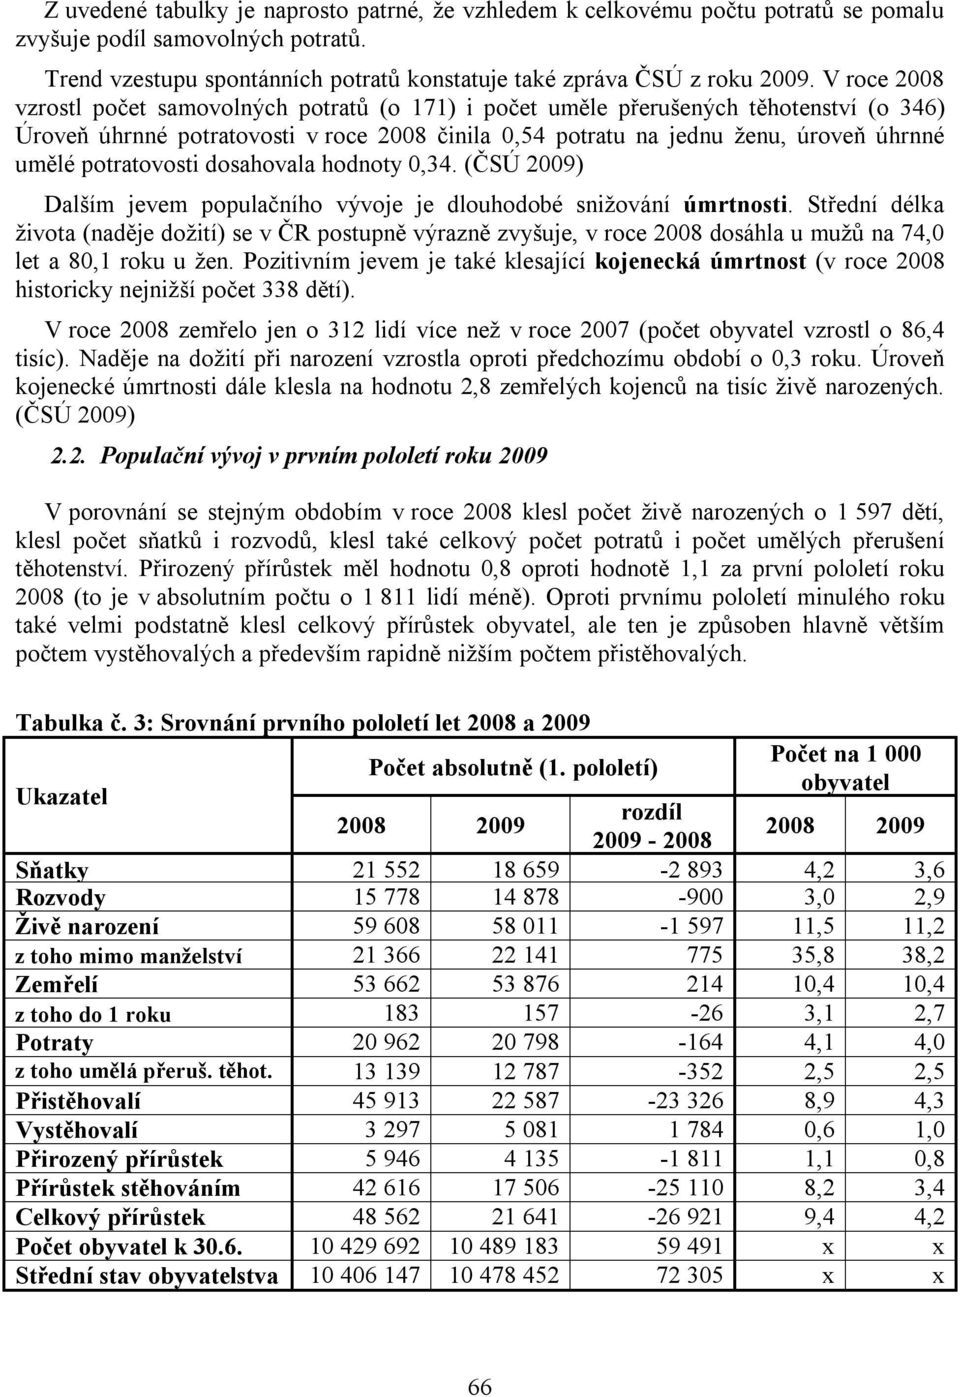 potratovosti dosahovala hodnoty 0,34. (ČSÚ 2009) Dalším jevem populačního vývoje je dlouhodobé snižování úmrtnosti.